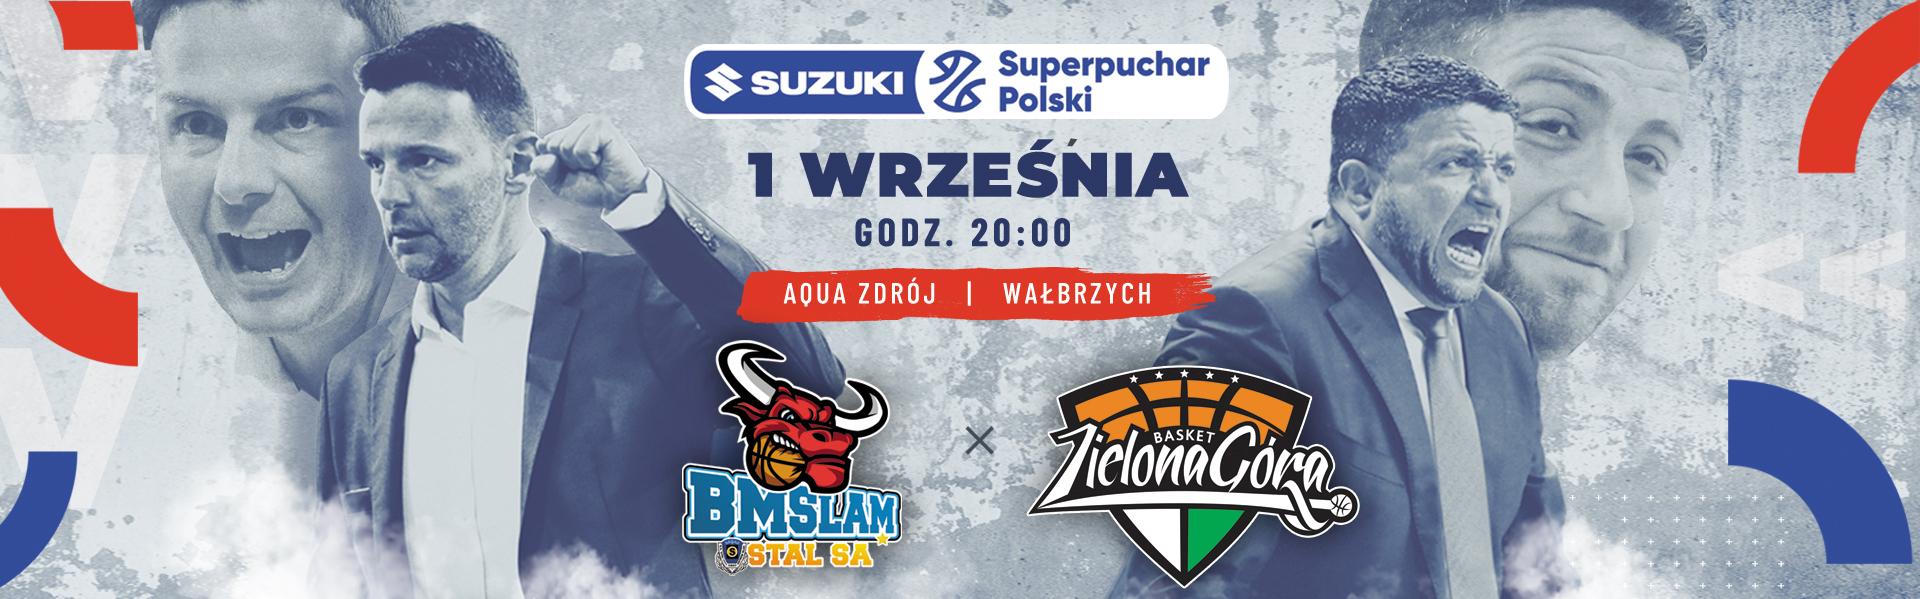 Mecz o Suzuki Superpuchar Polski już w środę! Oglądaj w Polsat Sport Extra